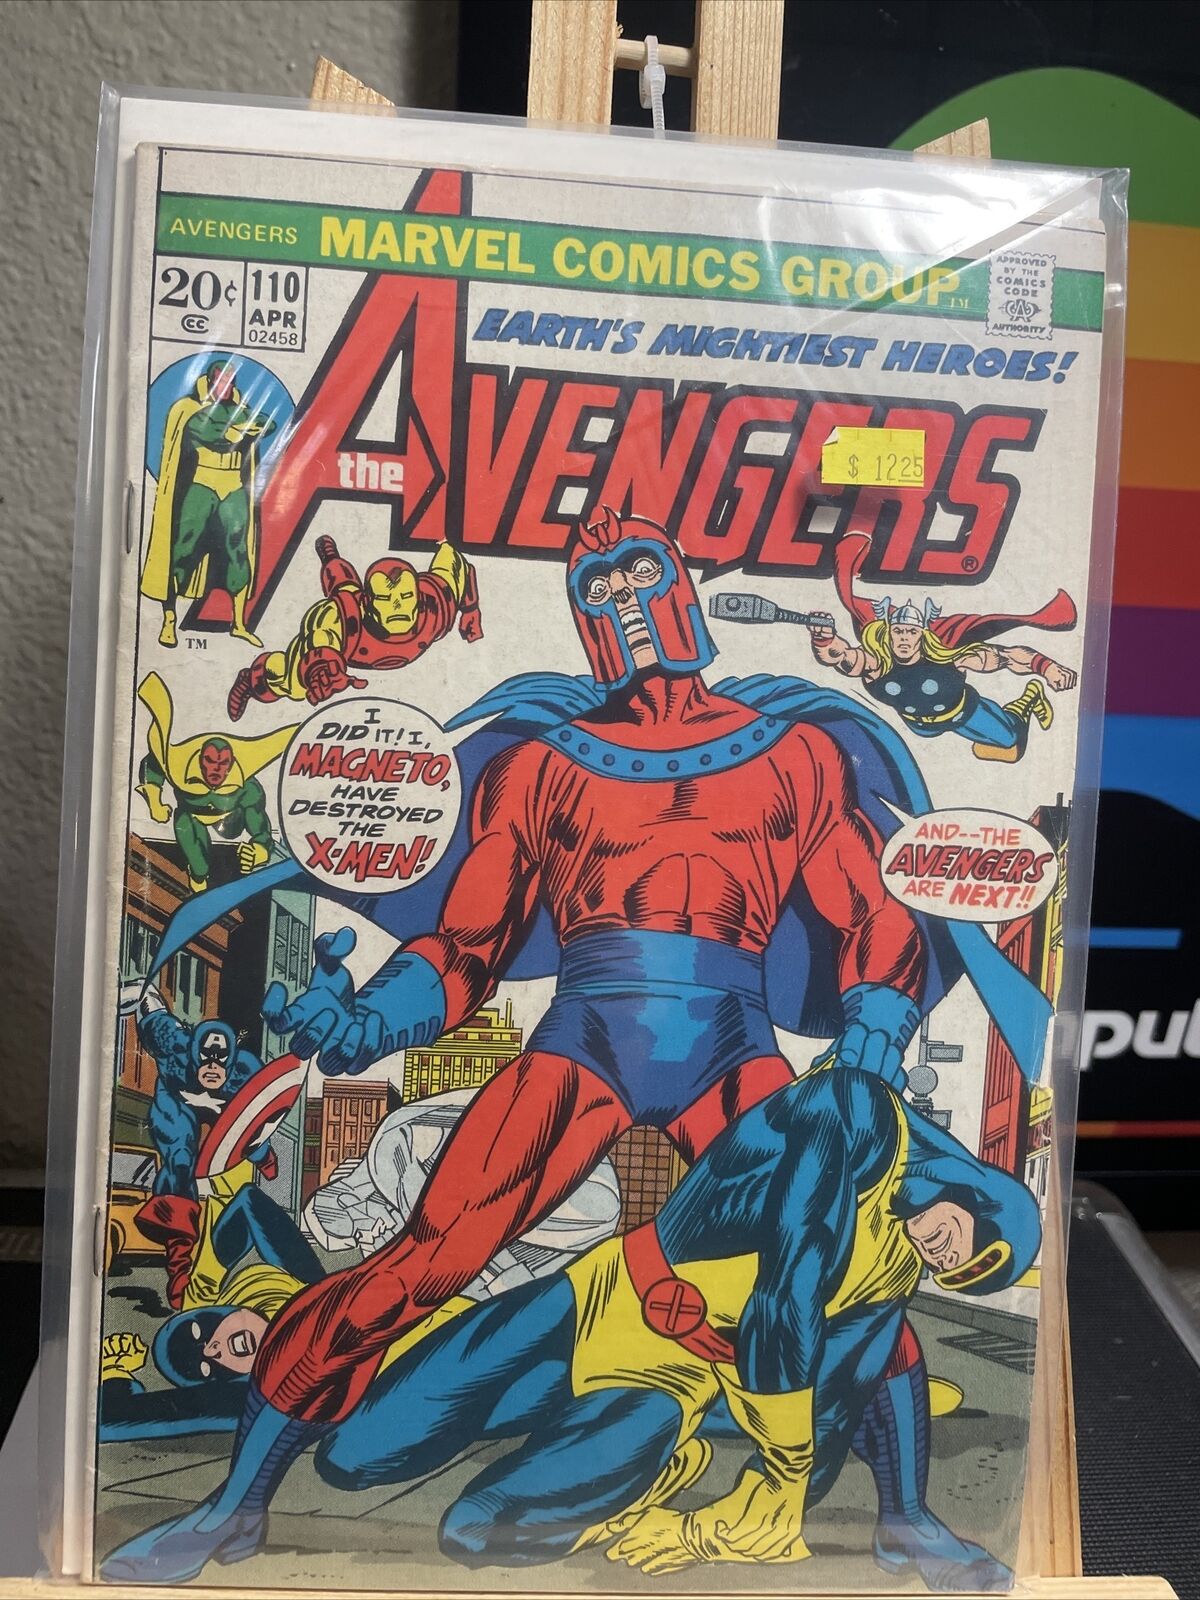 The Avengers #110 (Marvel Comics April 1973)